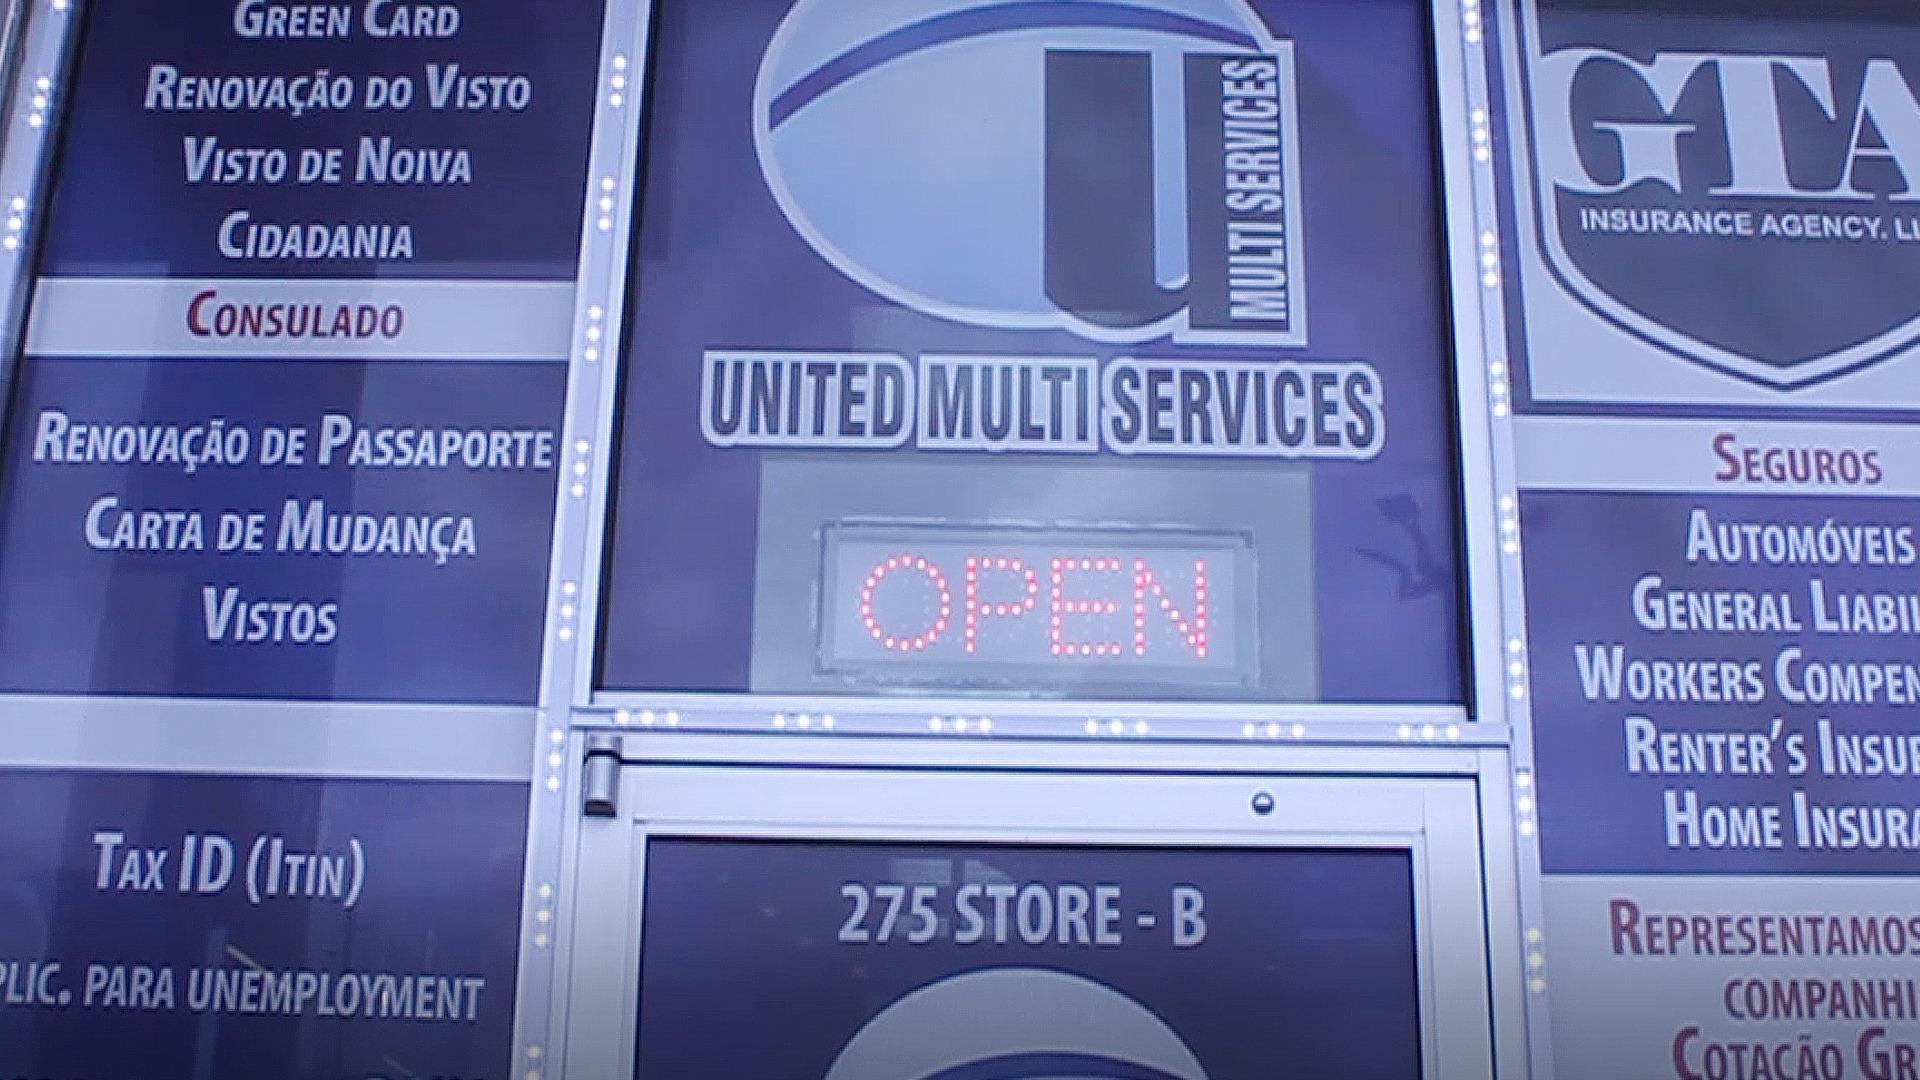 United Multi Services